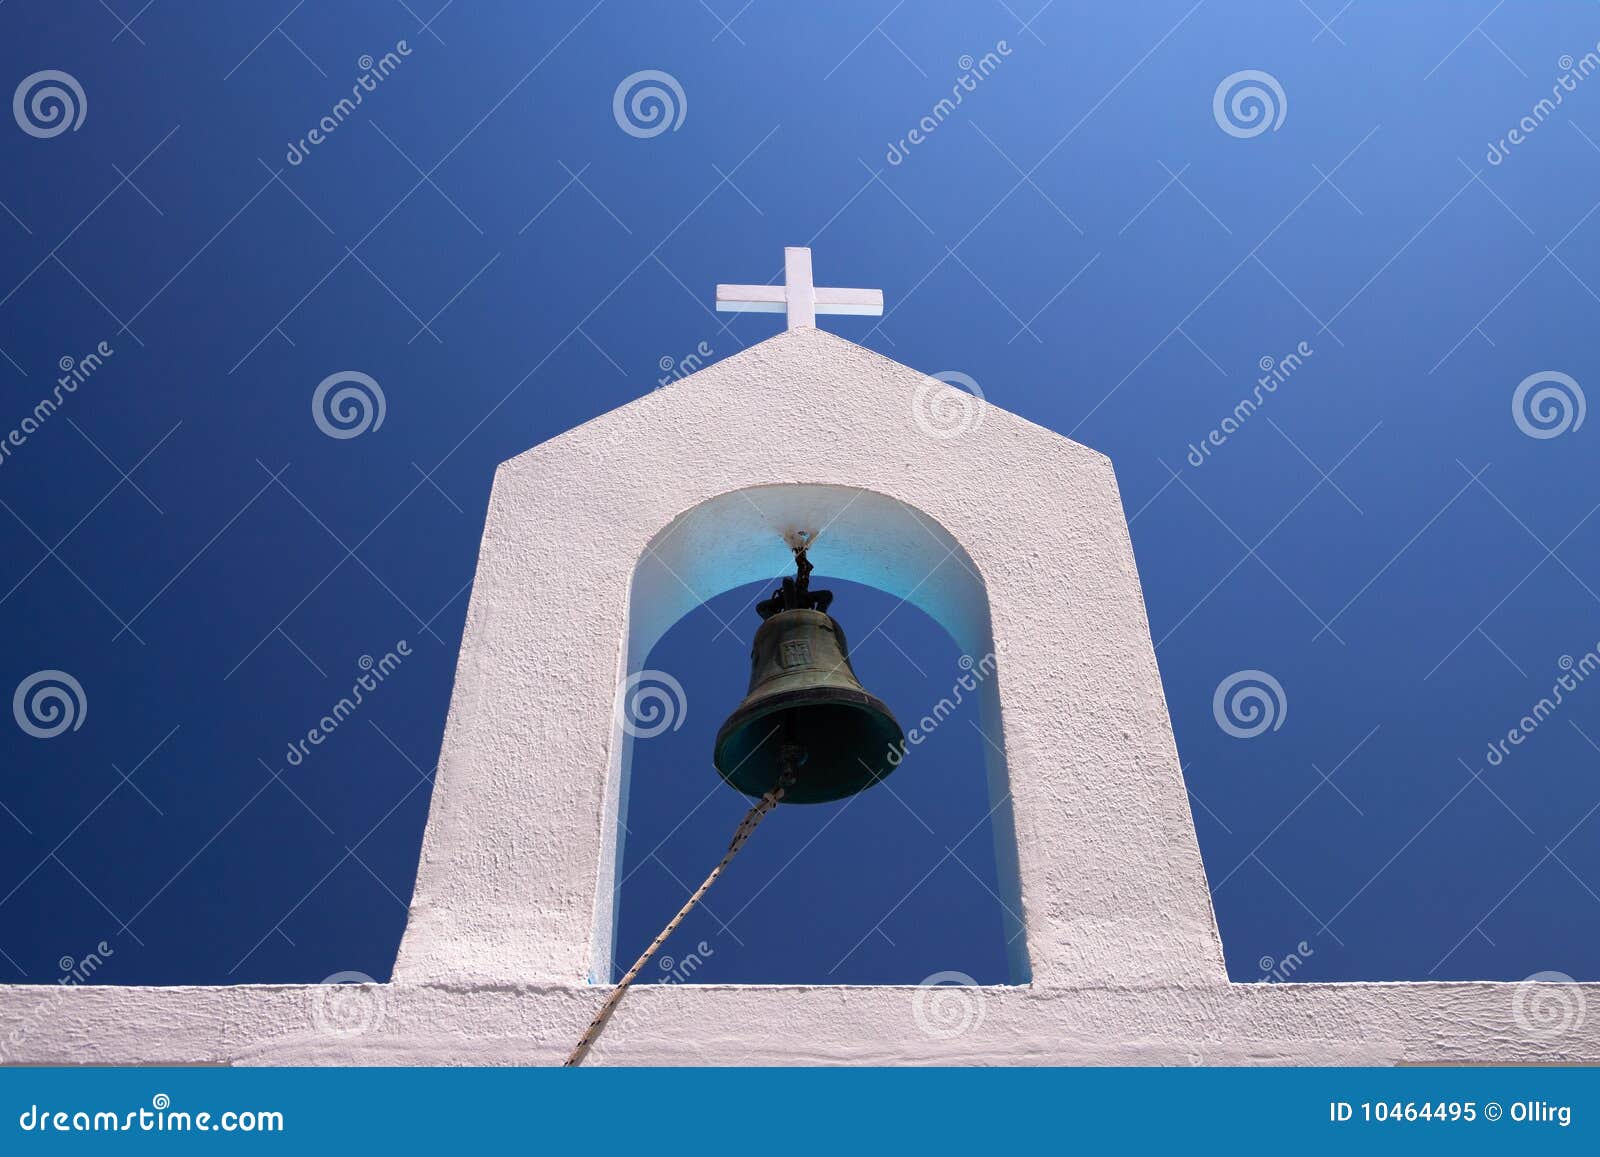 bell of white belltower